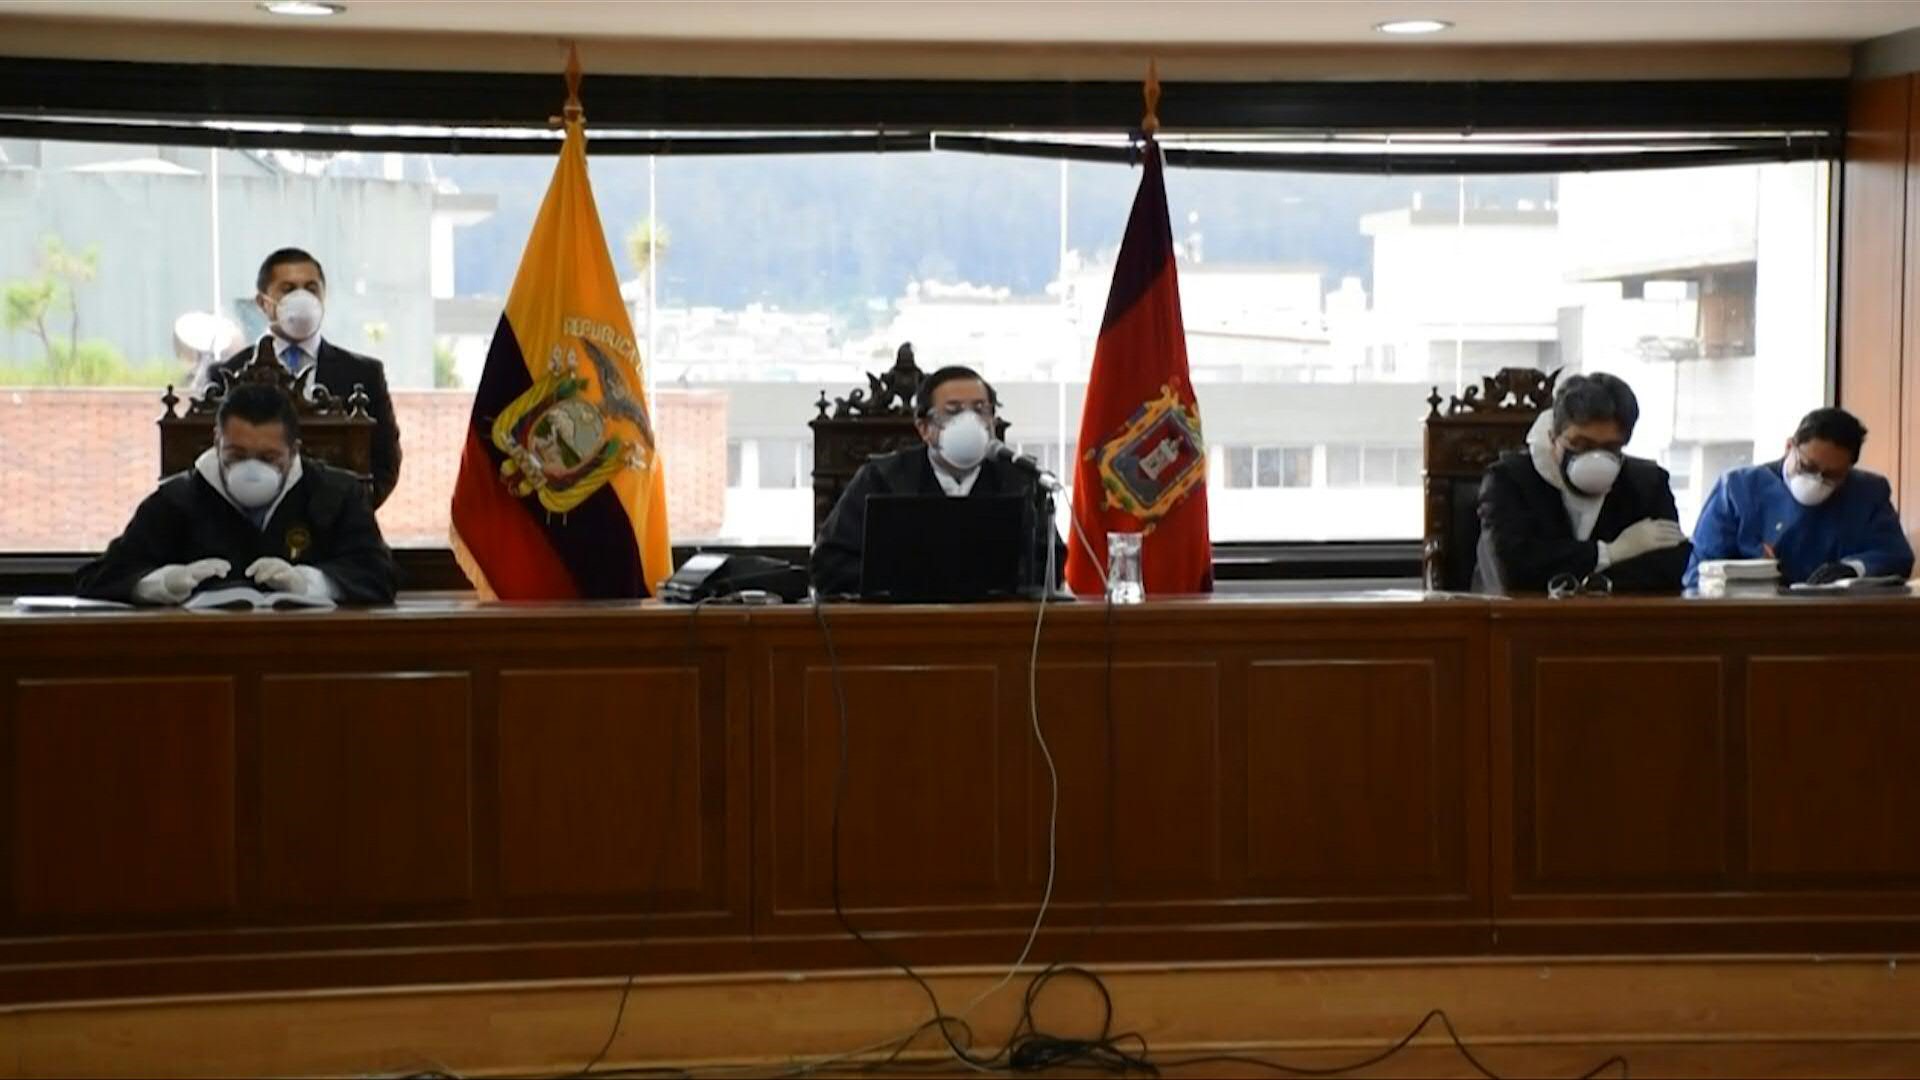 El 7 de abril la justicia de Ecuador condenó en ausencia al expresidente Rafael Correa a ocho años de cárcel por corrupción y le impuso una inhabilitación política por 25 años